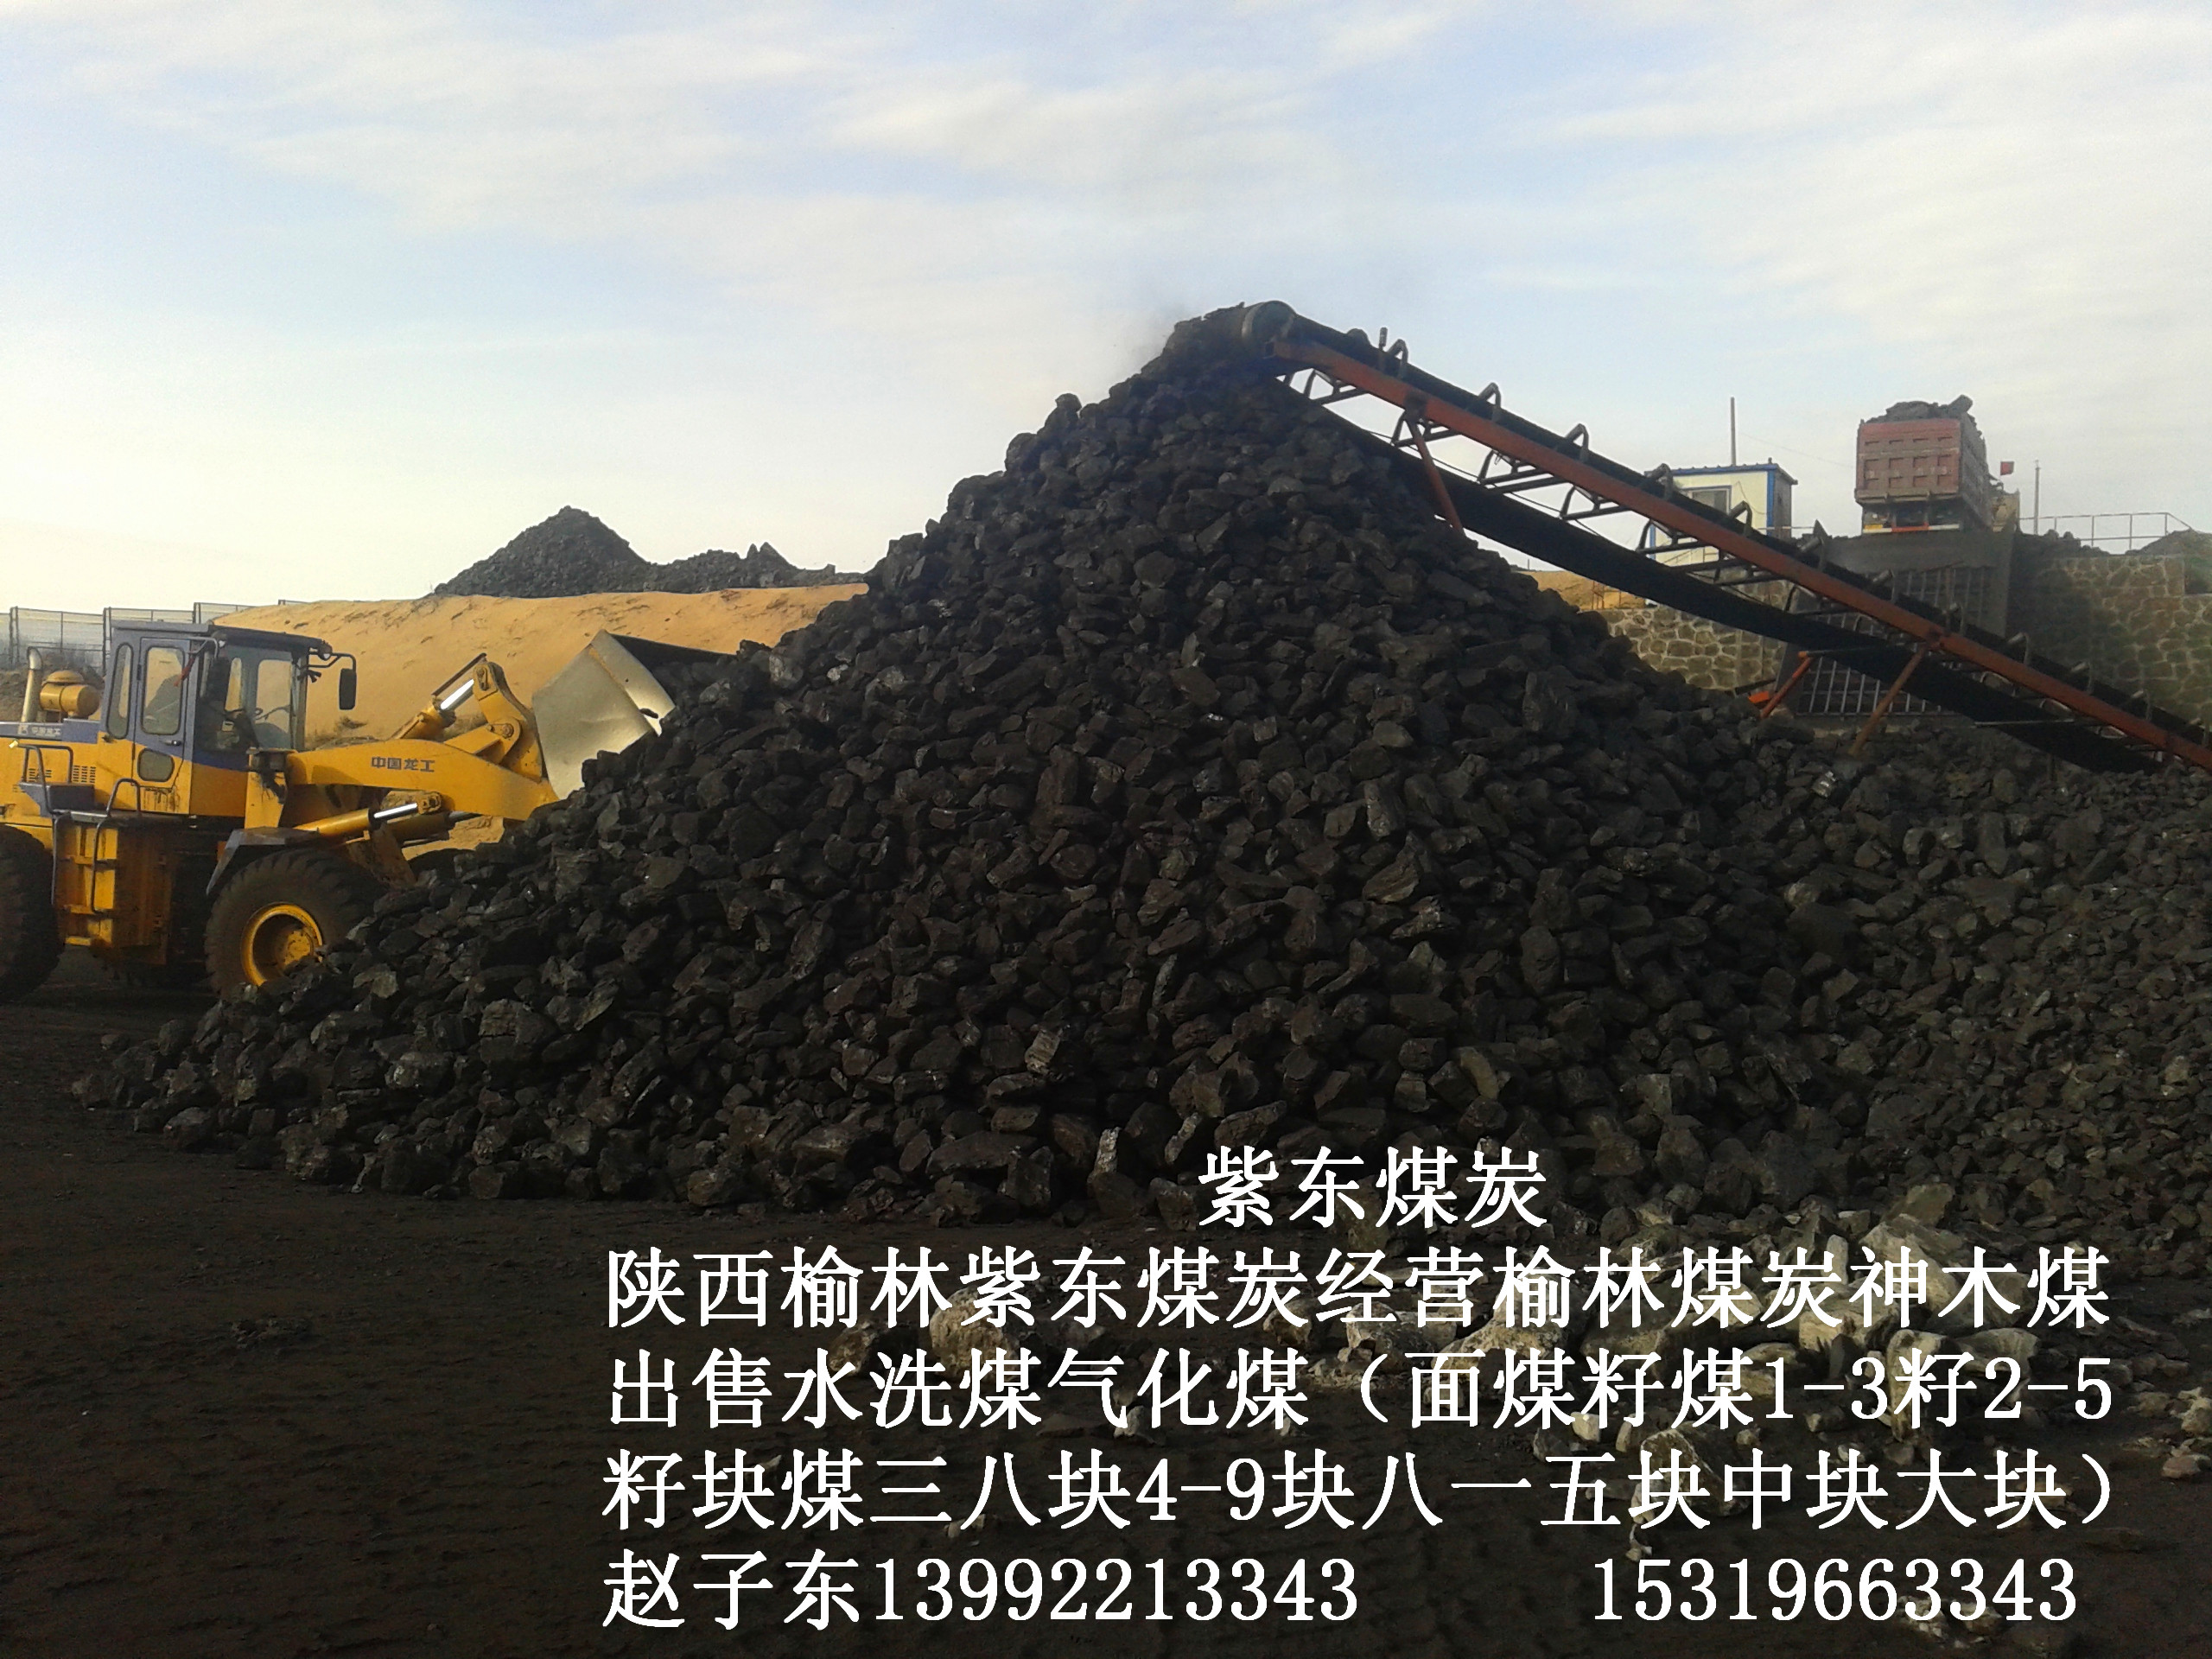 供应用于工业建材的陕西榆林千树塔煤矿出售水洗面煤二五籽三八块煤八一五中块煤销售